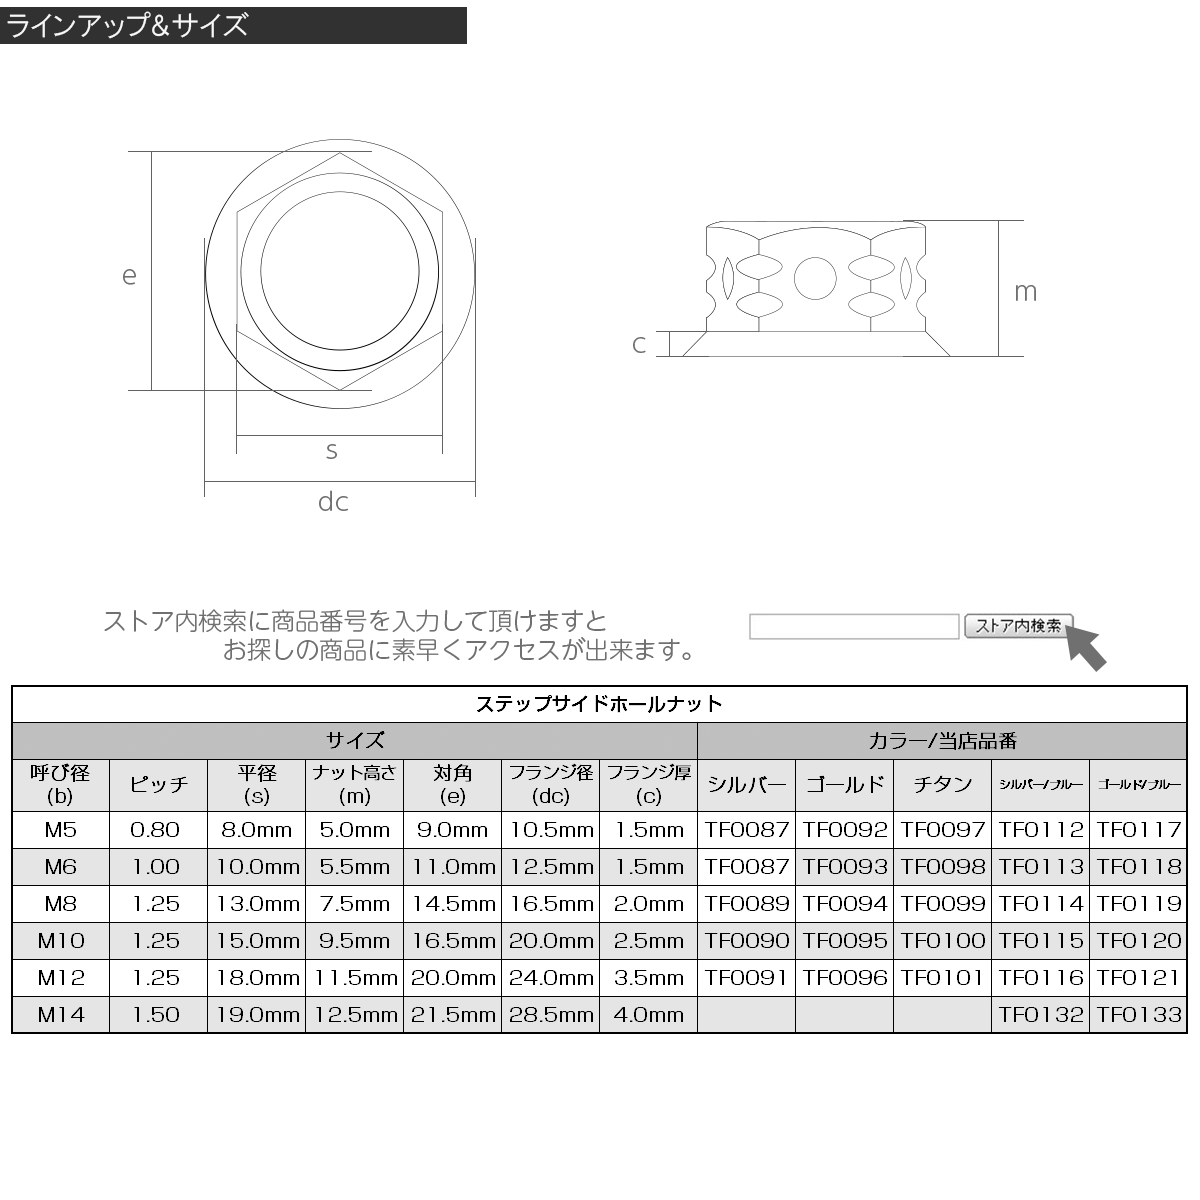 SUSステンレス M10 P=1.25 ステップサイドホールナット フランジ付 六角ナット ゴールド / 焼きチタンカラー TF0120_画像3